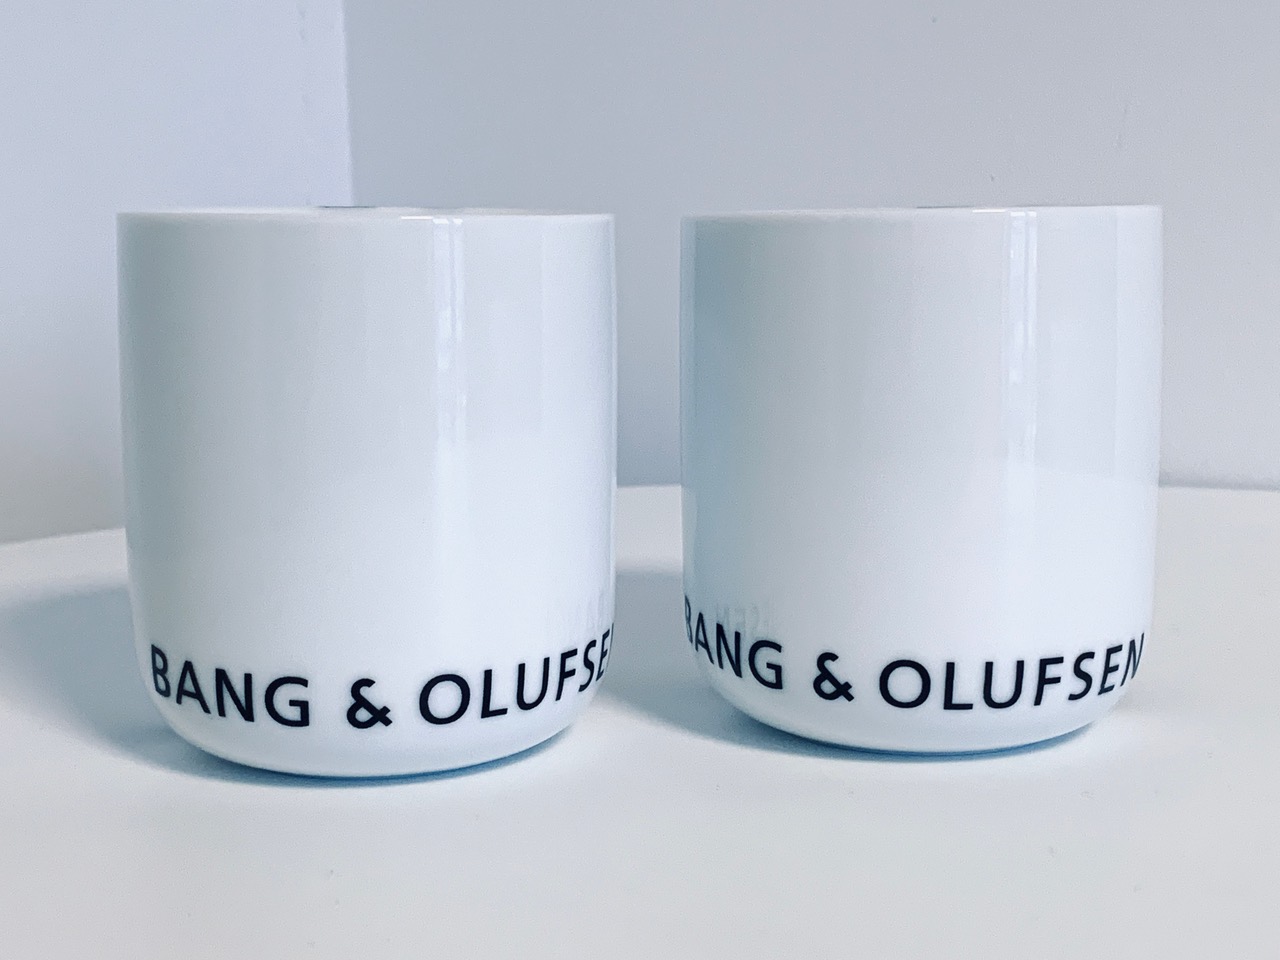 Image des gobelets Menu Bang & Olufsen neufs dans l'emballage proposé dans cette publicité.